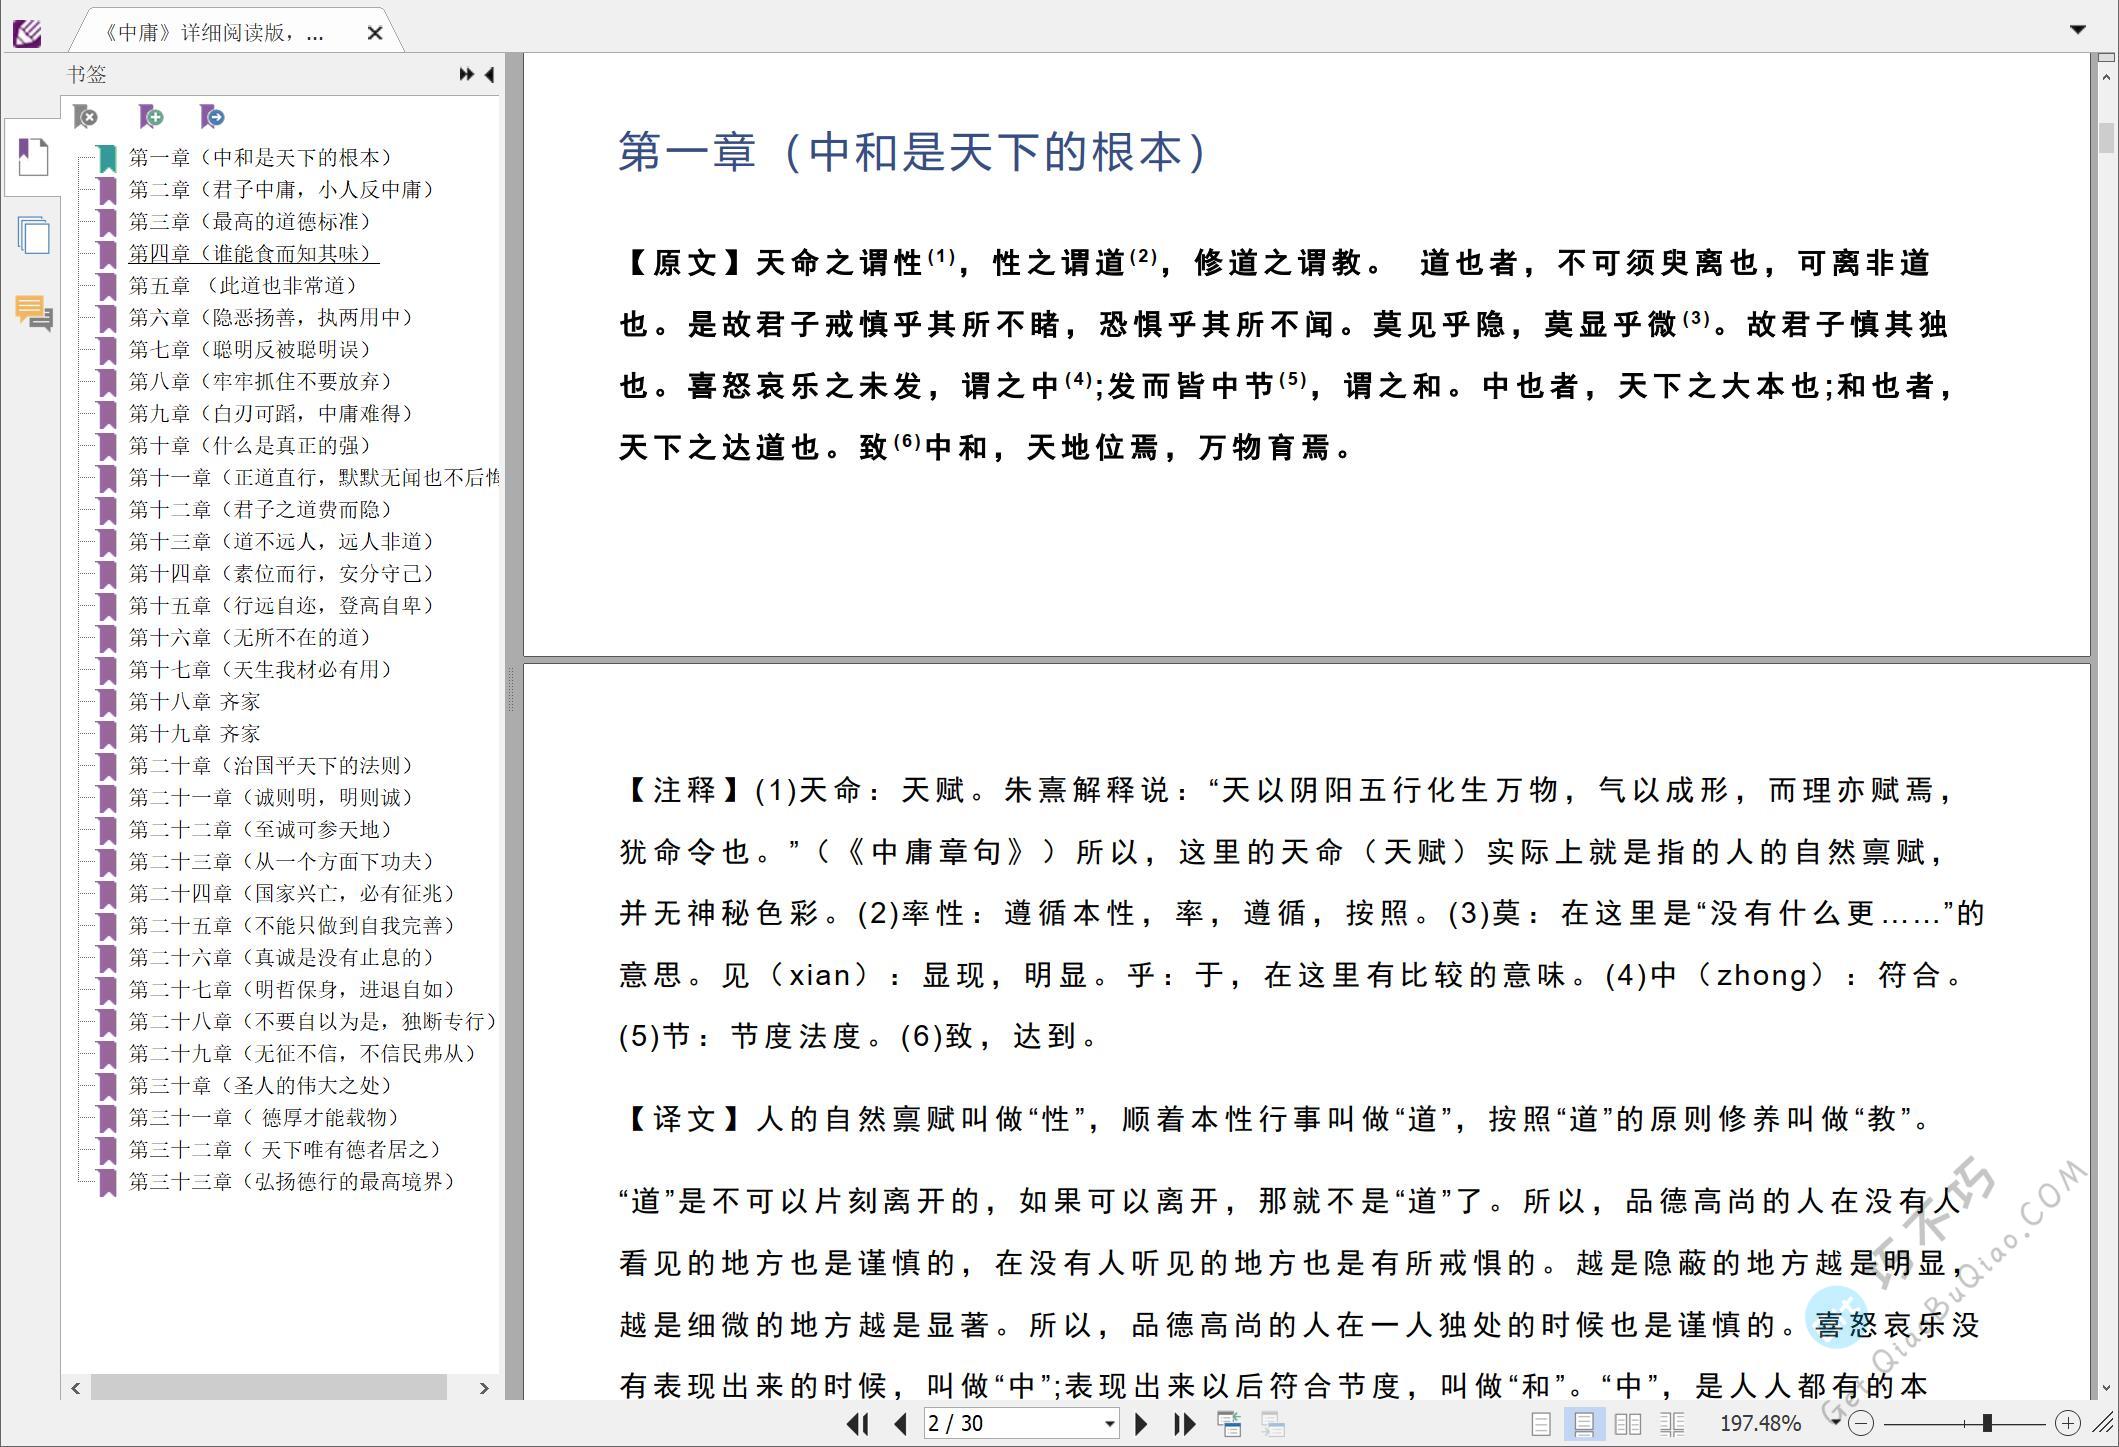 国学儒家学派经典之作《中庸》全文+译文精排PDF+EPUB+WORD下载，有注音、注释、解读可打印修正版